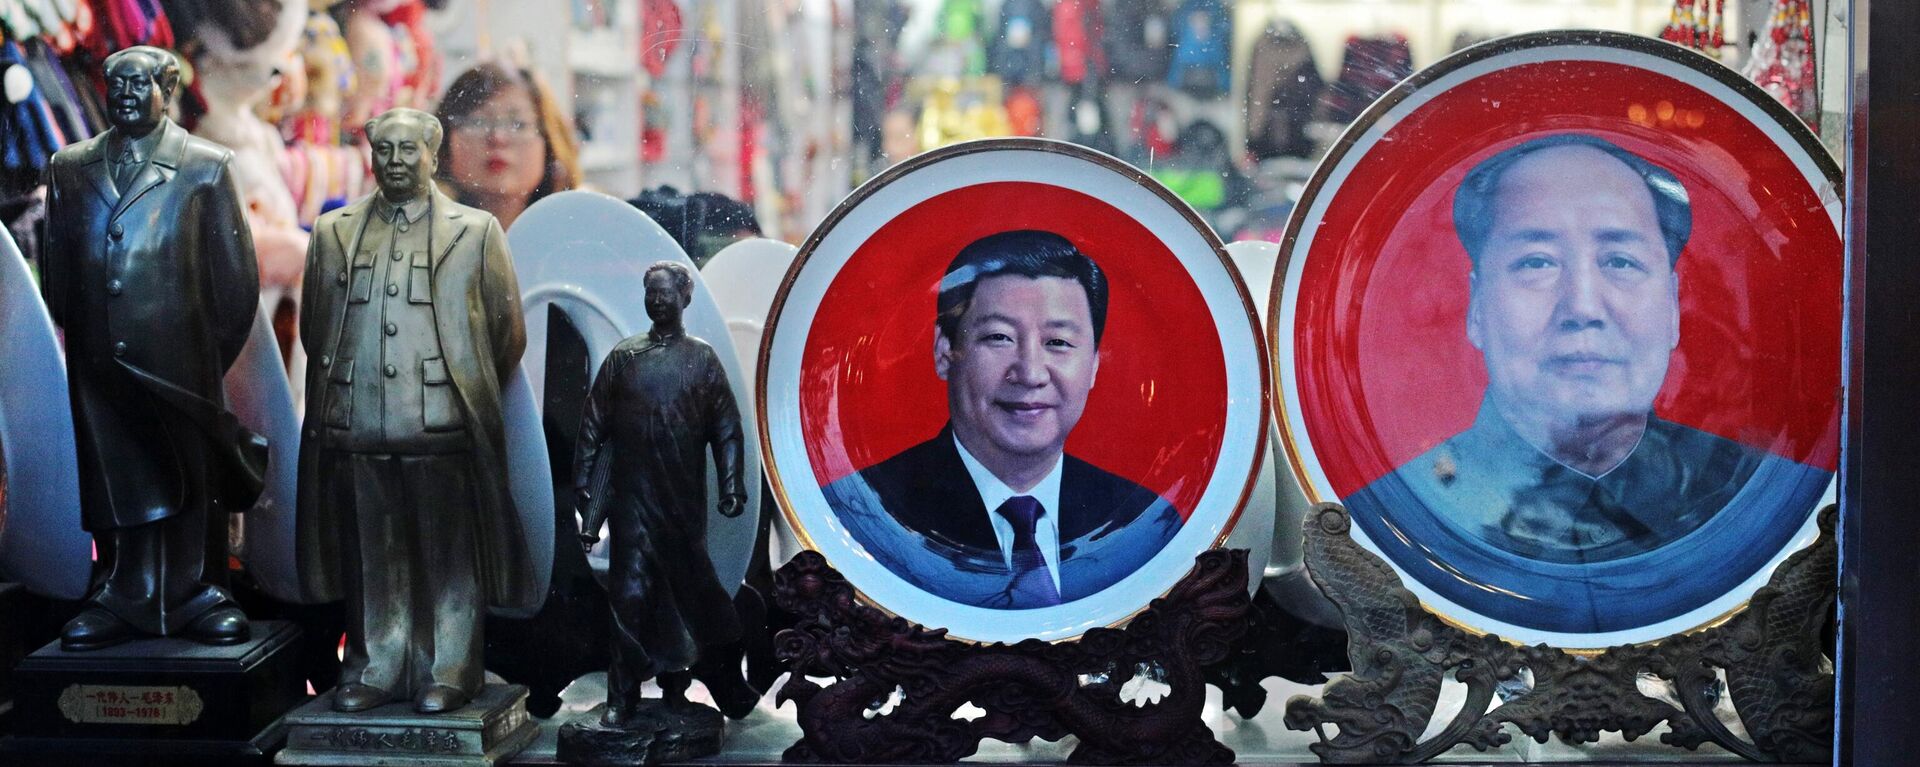 Продажа сувенирных тарелок и фигурок с портретами Мао Цзэдуна и Си Цзиньпина в Пекине - Sputnik Таджикистан, 1920, 30.12.2021